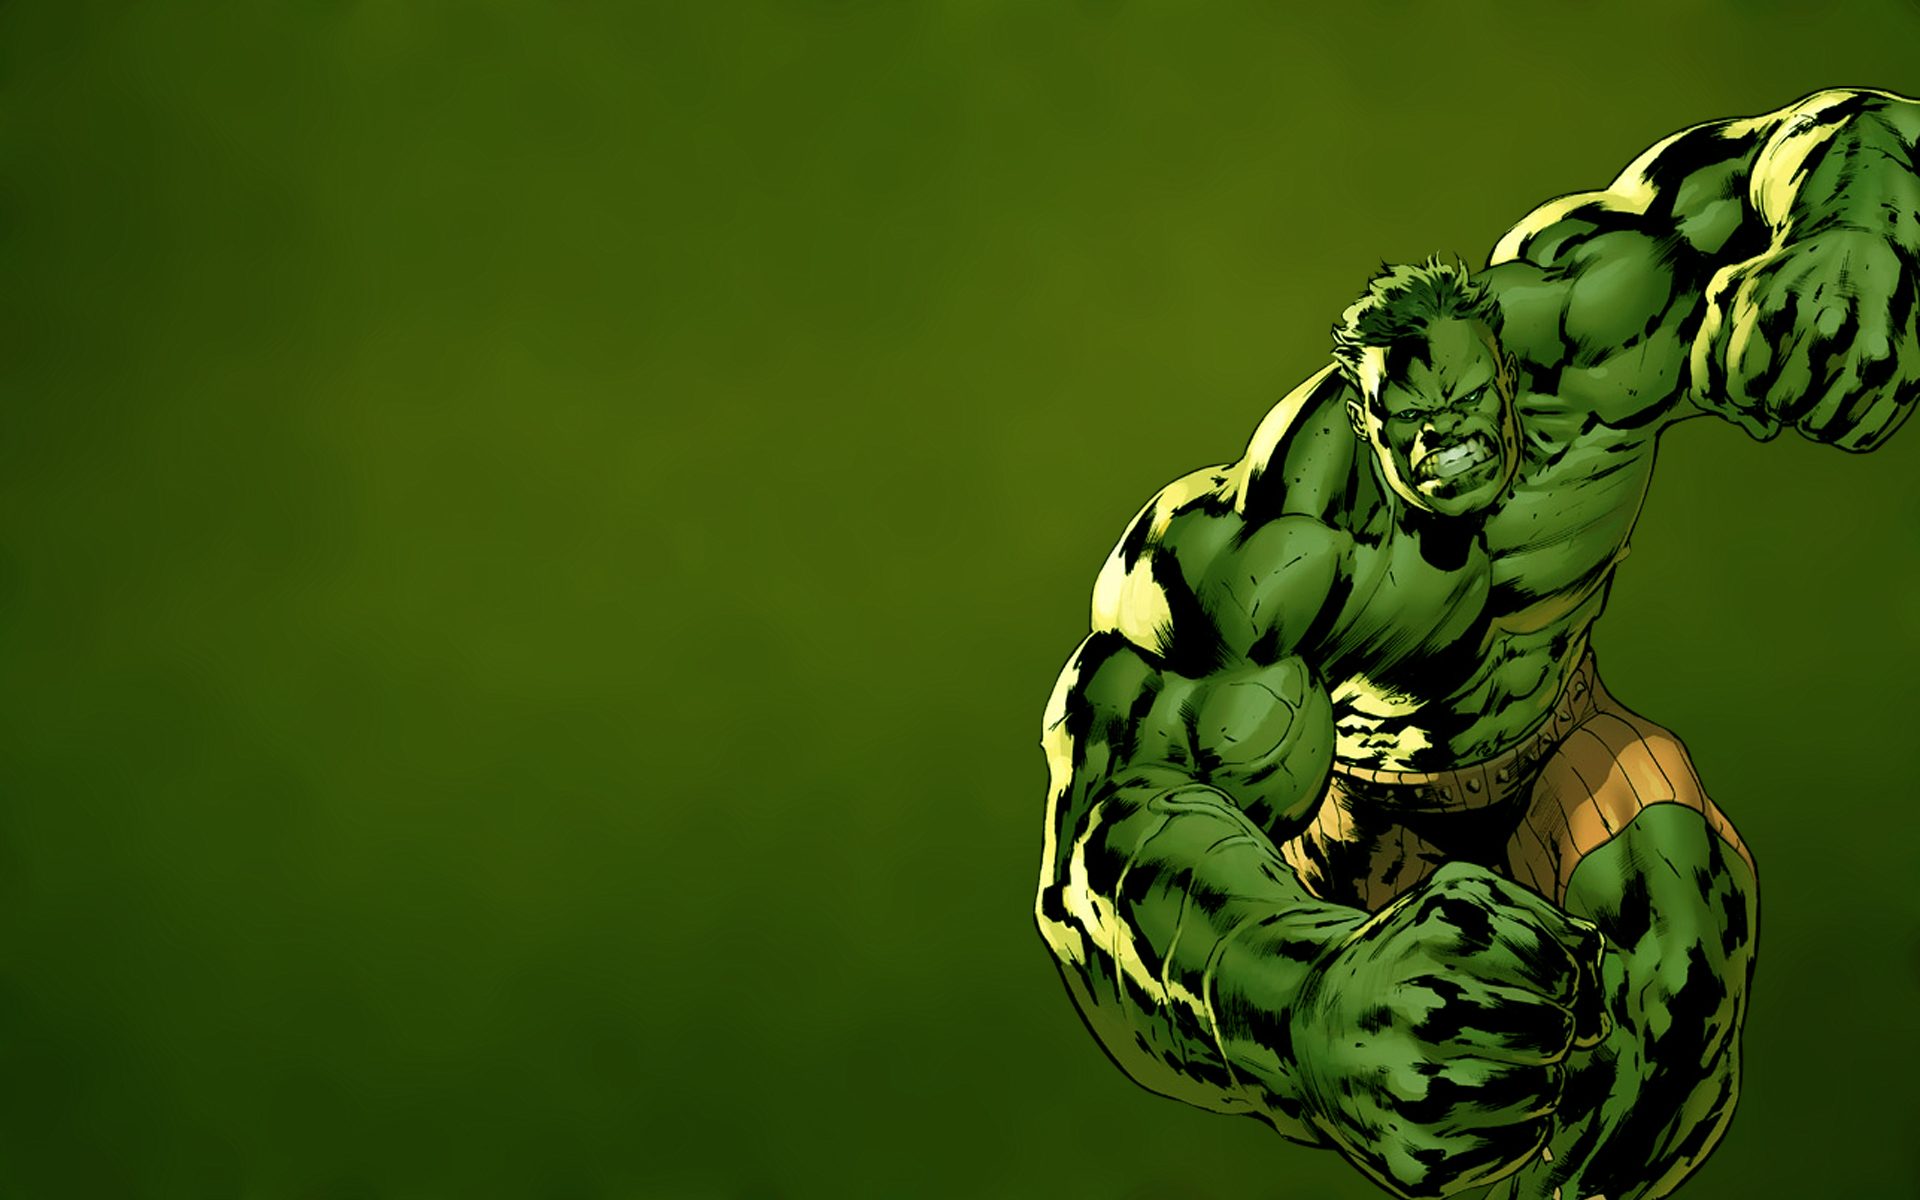 hulk live wallpaper,casco,verde,superhéroe,personaje de ficción,ficción